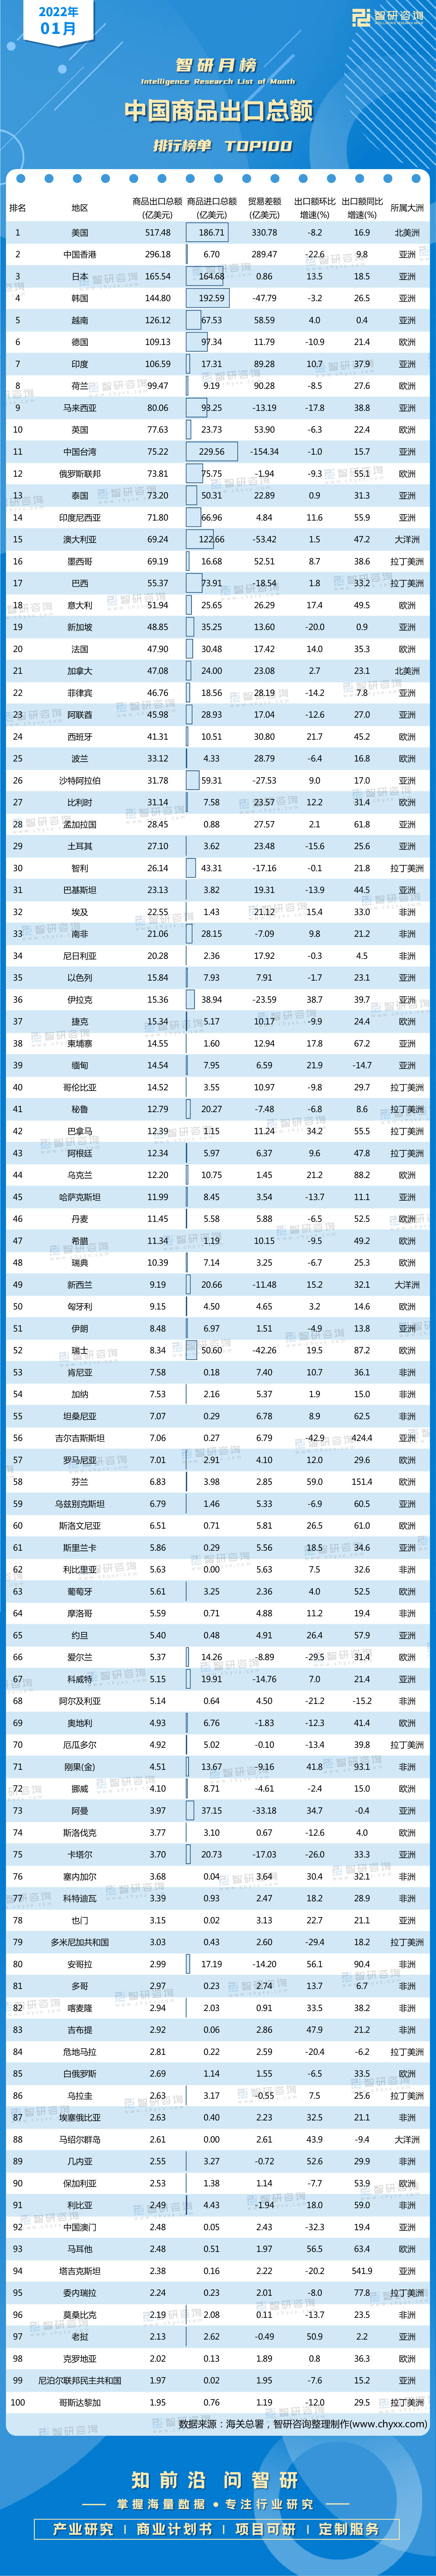 中国对外出口商品排行_外贸总额排名:中国第1、美国第2、德国第3、荷兰第4、日本第5